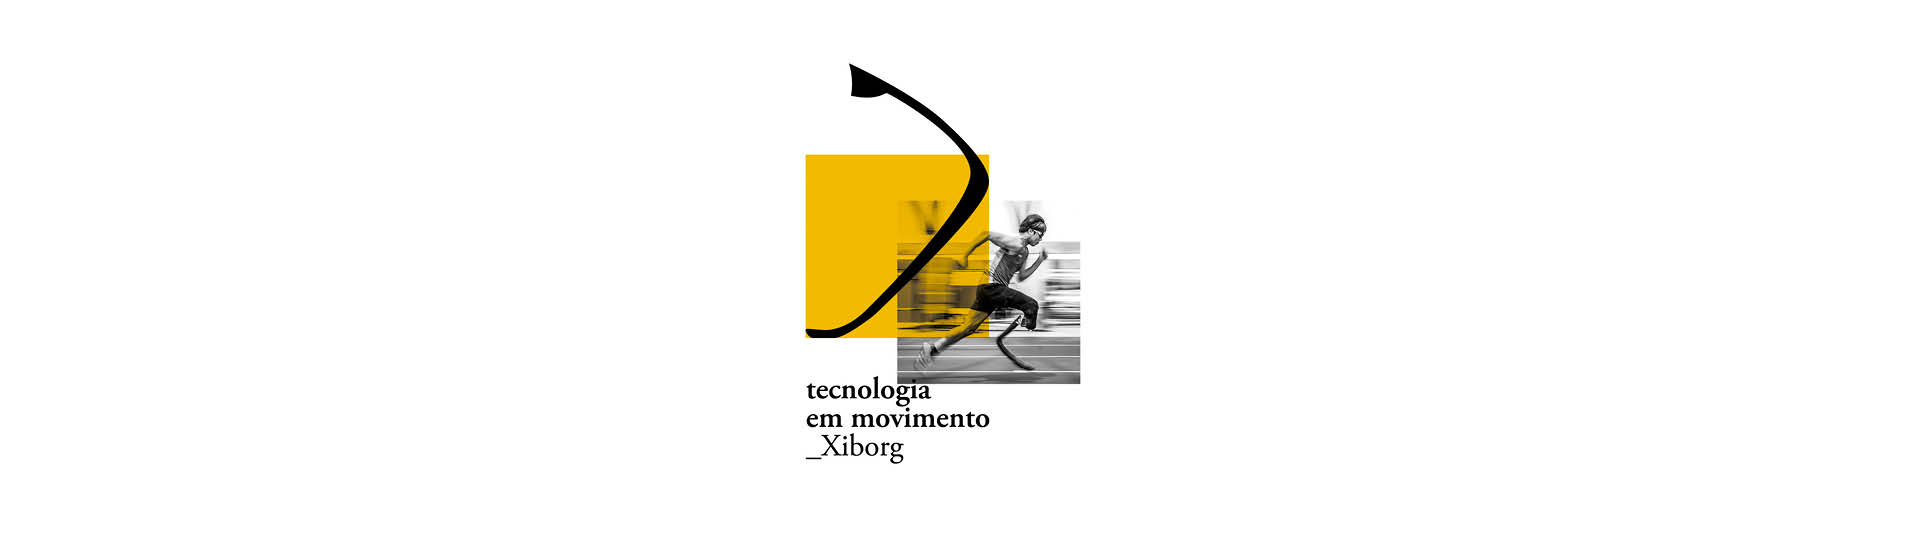 Banner da identidade visual da exposição Tecnologia em Movimento por Xiborg 